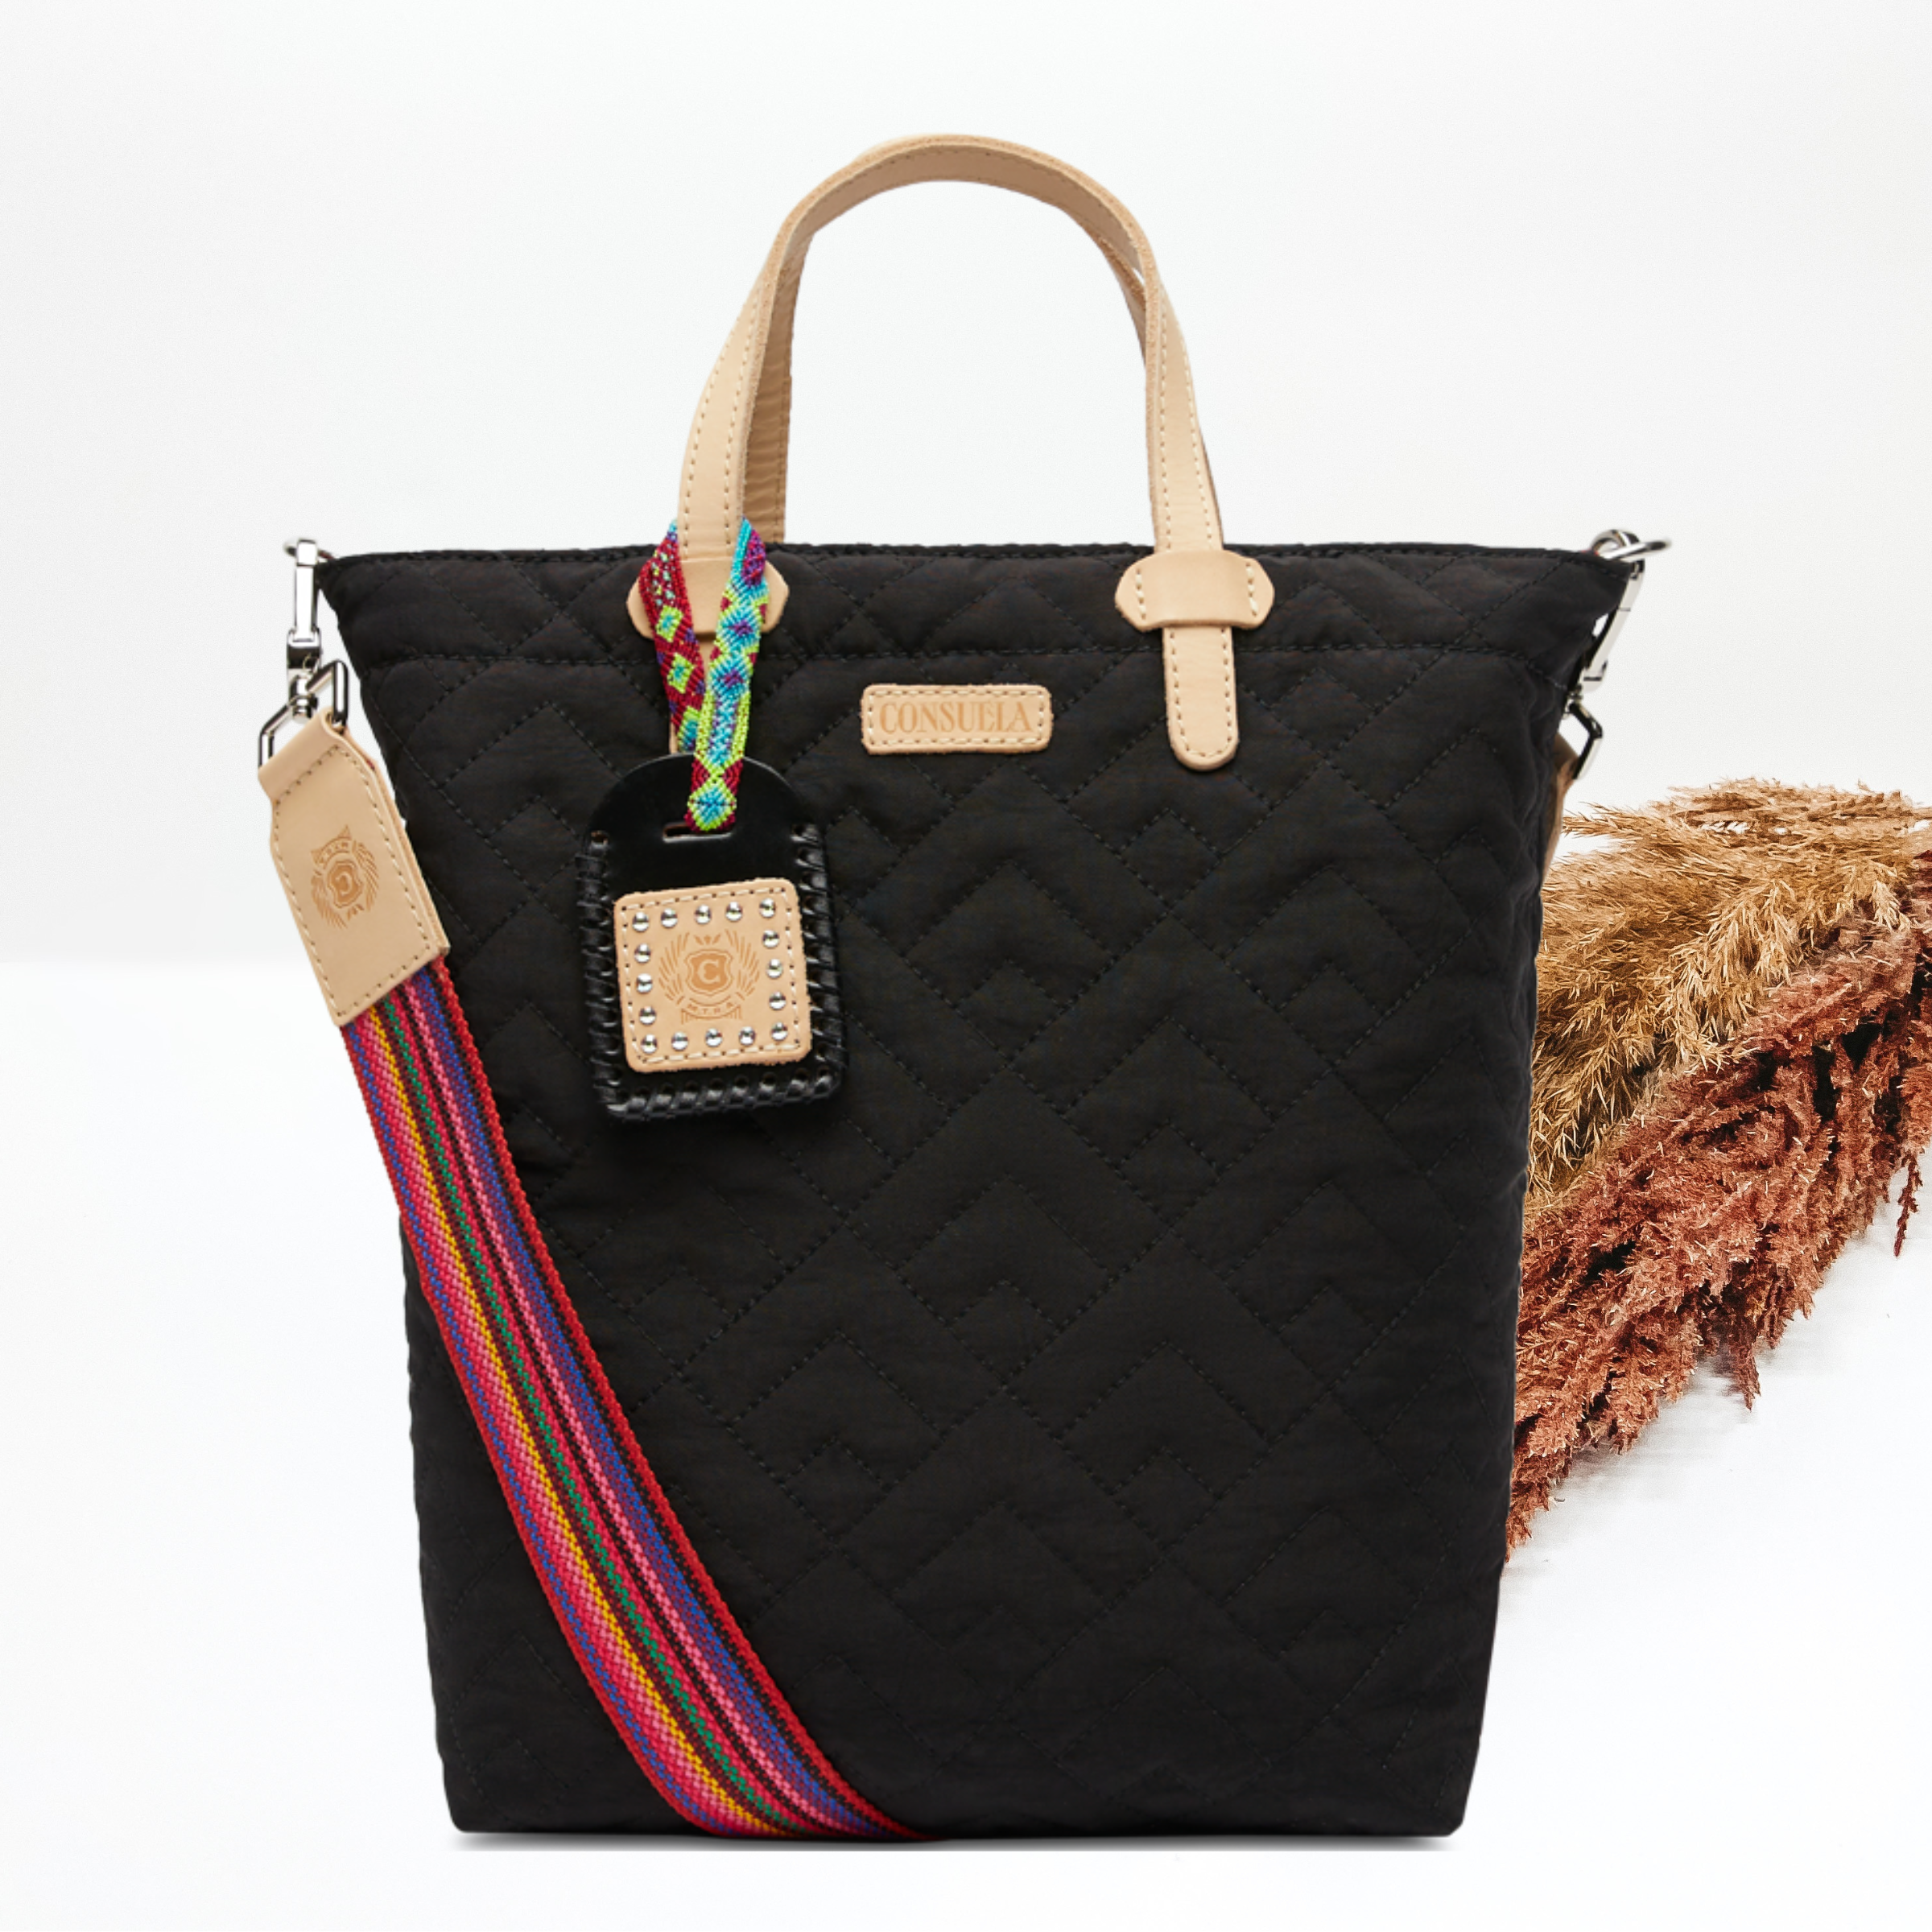 Brand New VICTORIA'S SECRET No Longer On VS website Purse Shoulder Bag  ❤️sj8m | eBay